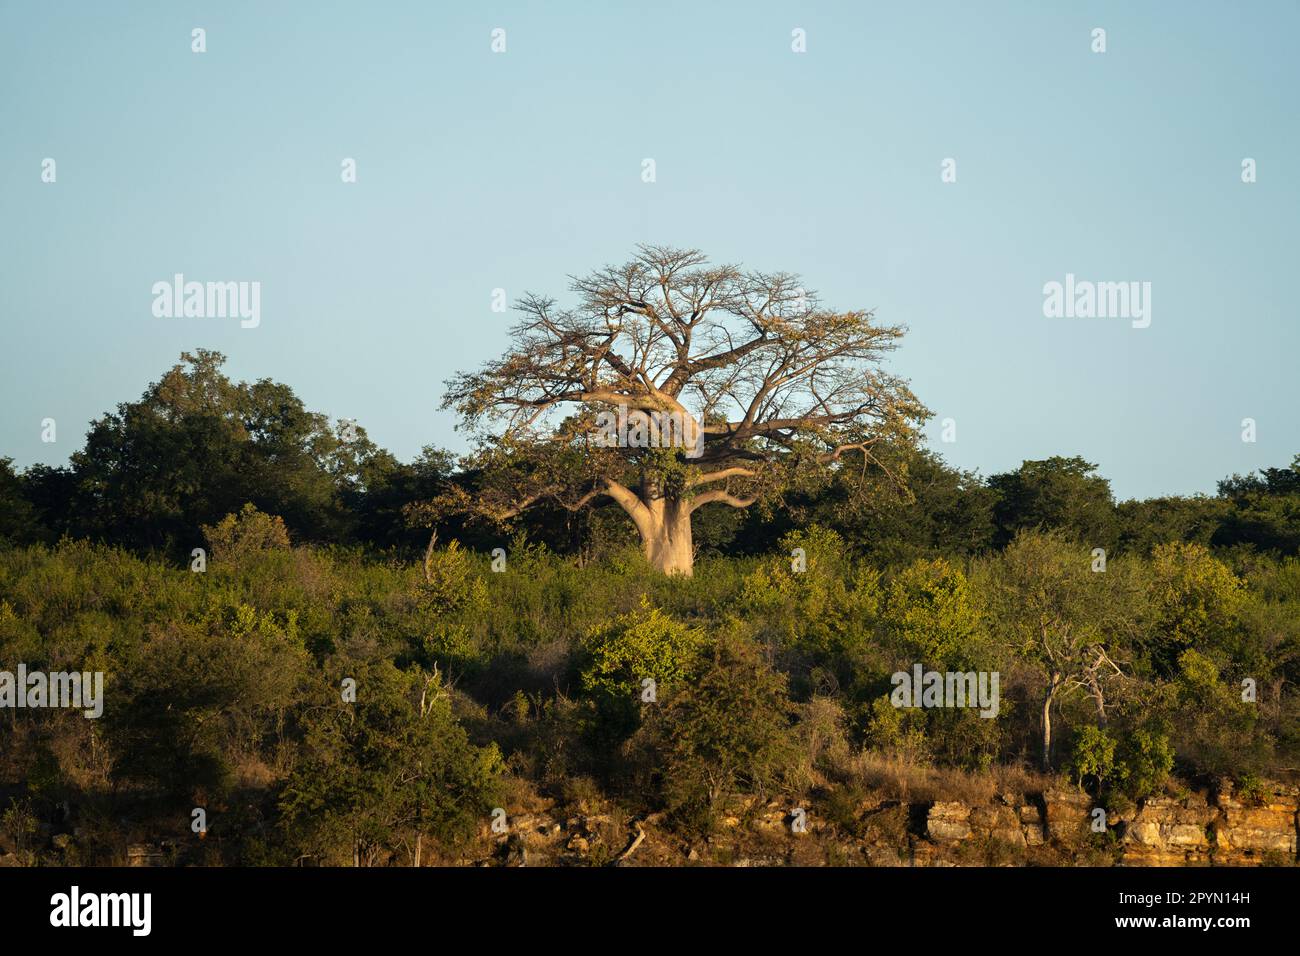 Le baobab se dresse au sommet d'une montagne dans la lumière dorée du coucher de soleil africain. Rivière Chobe, Botswana, Afrique Banque D'Images